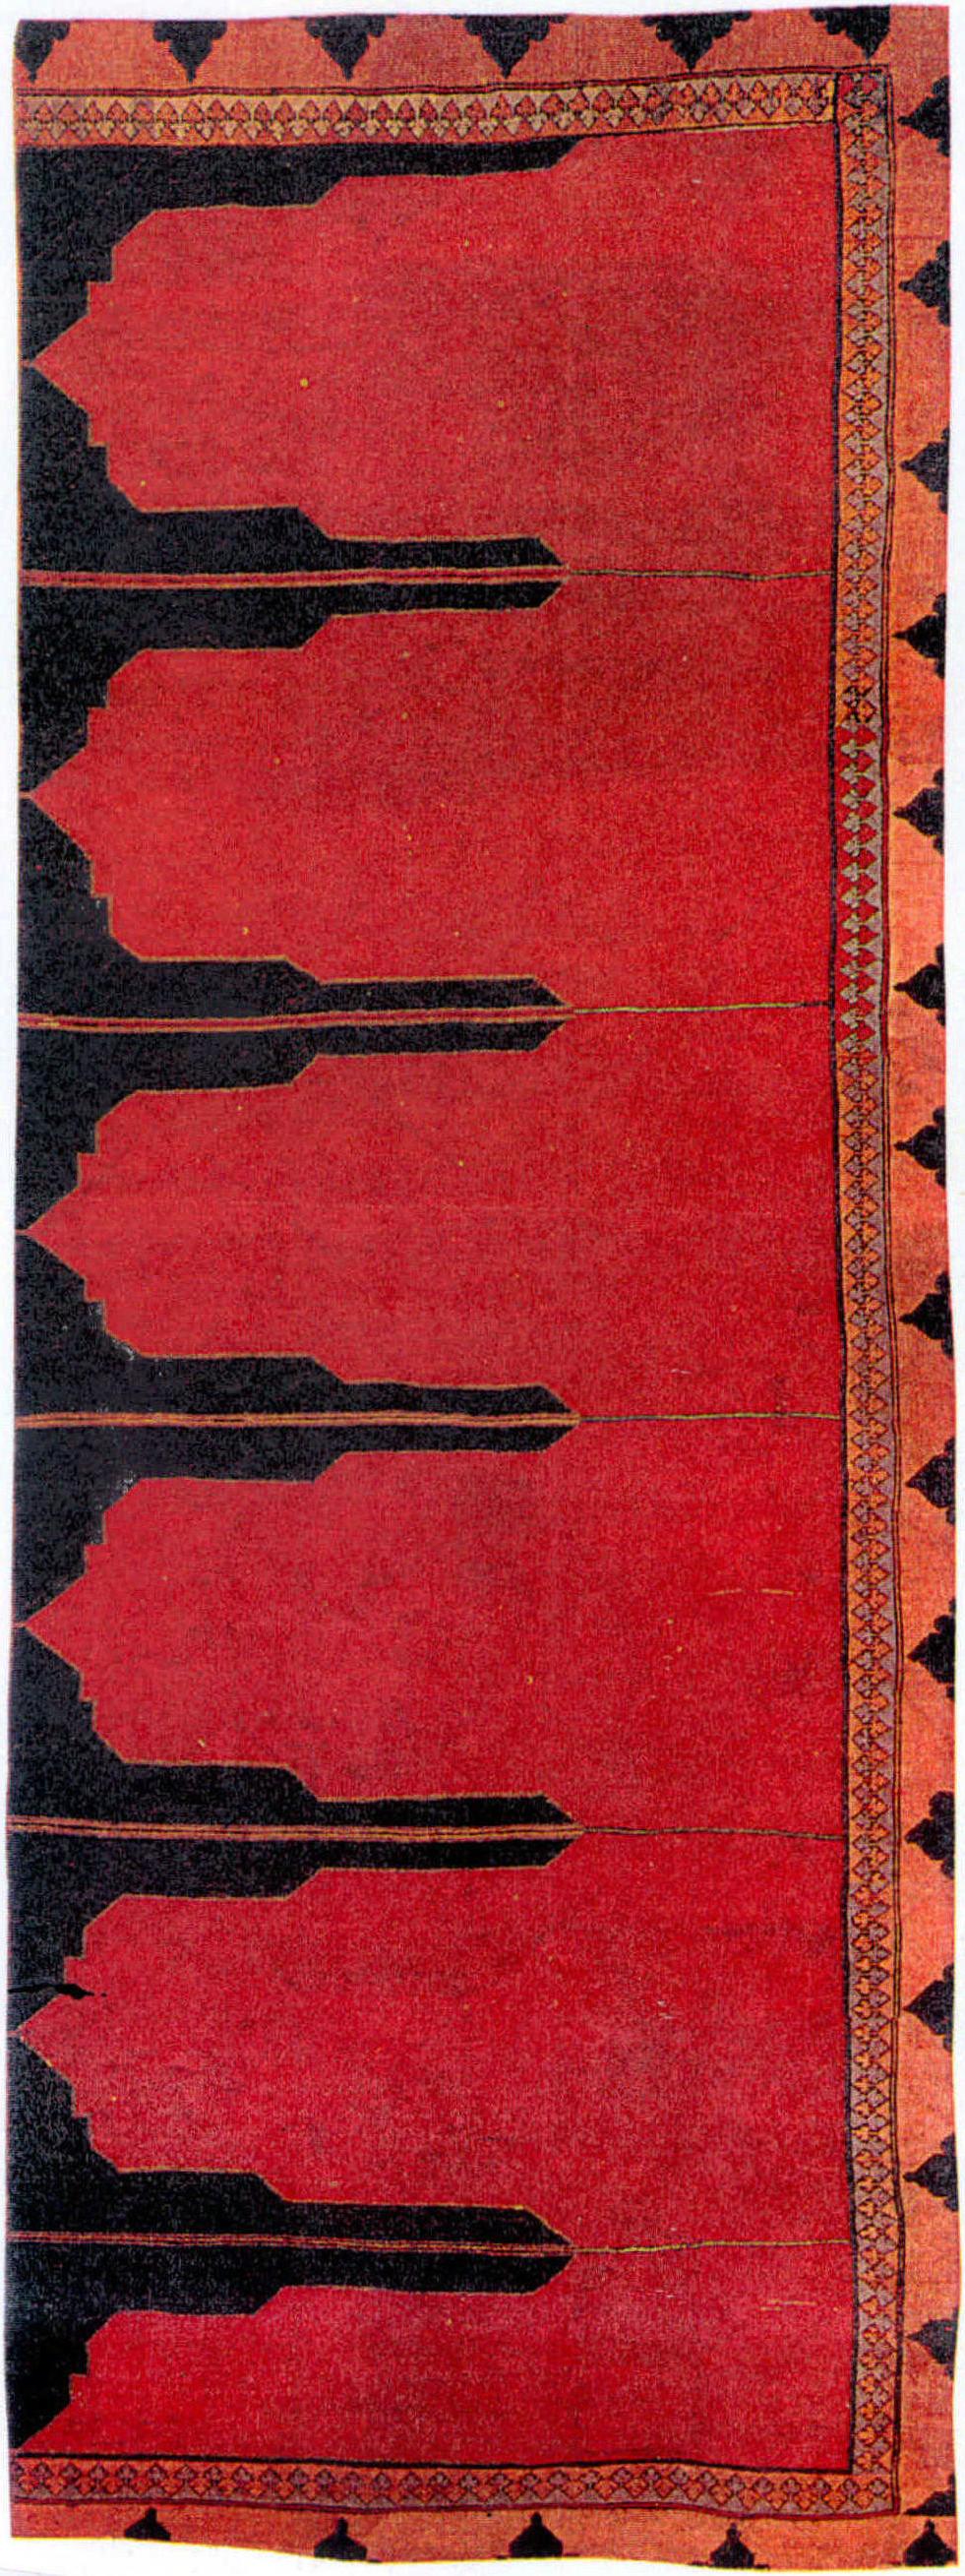 17世纪早期 土耳其为祈祷而设计的地毯，其简单设计及强烈的颜色对比，给予几乎现代的感觉